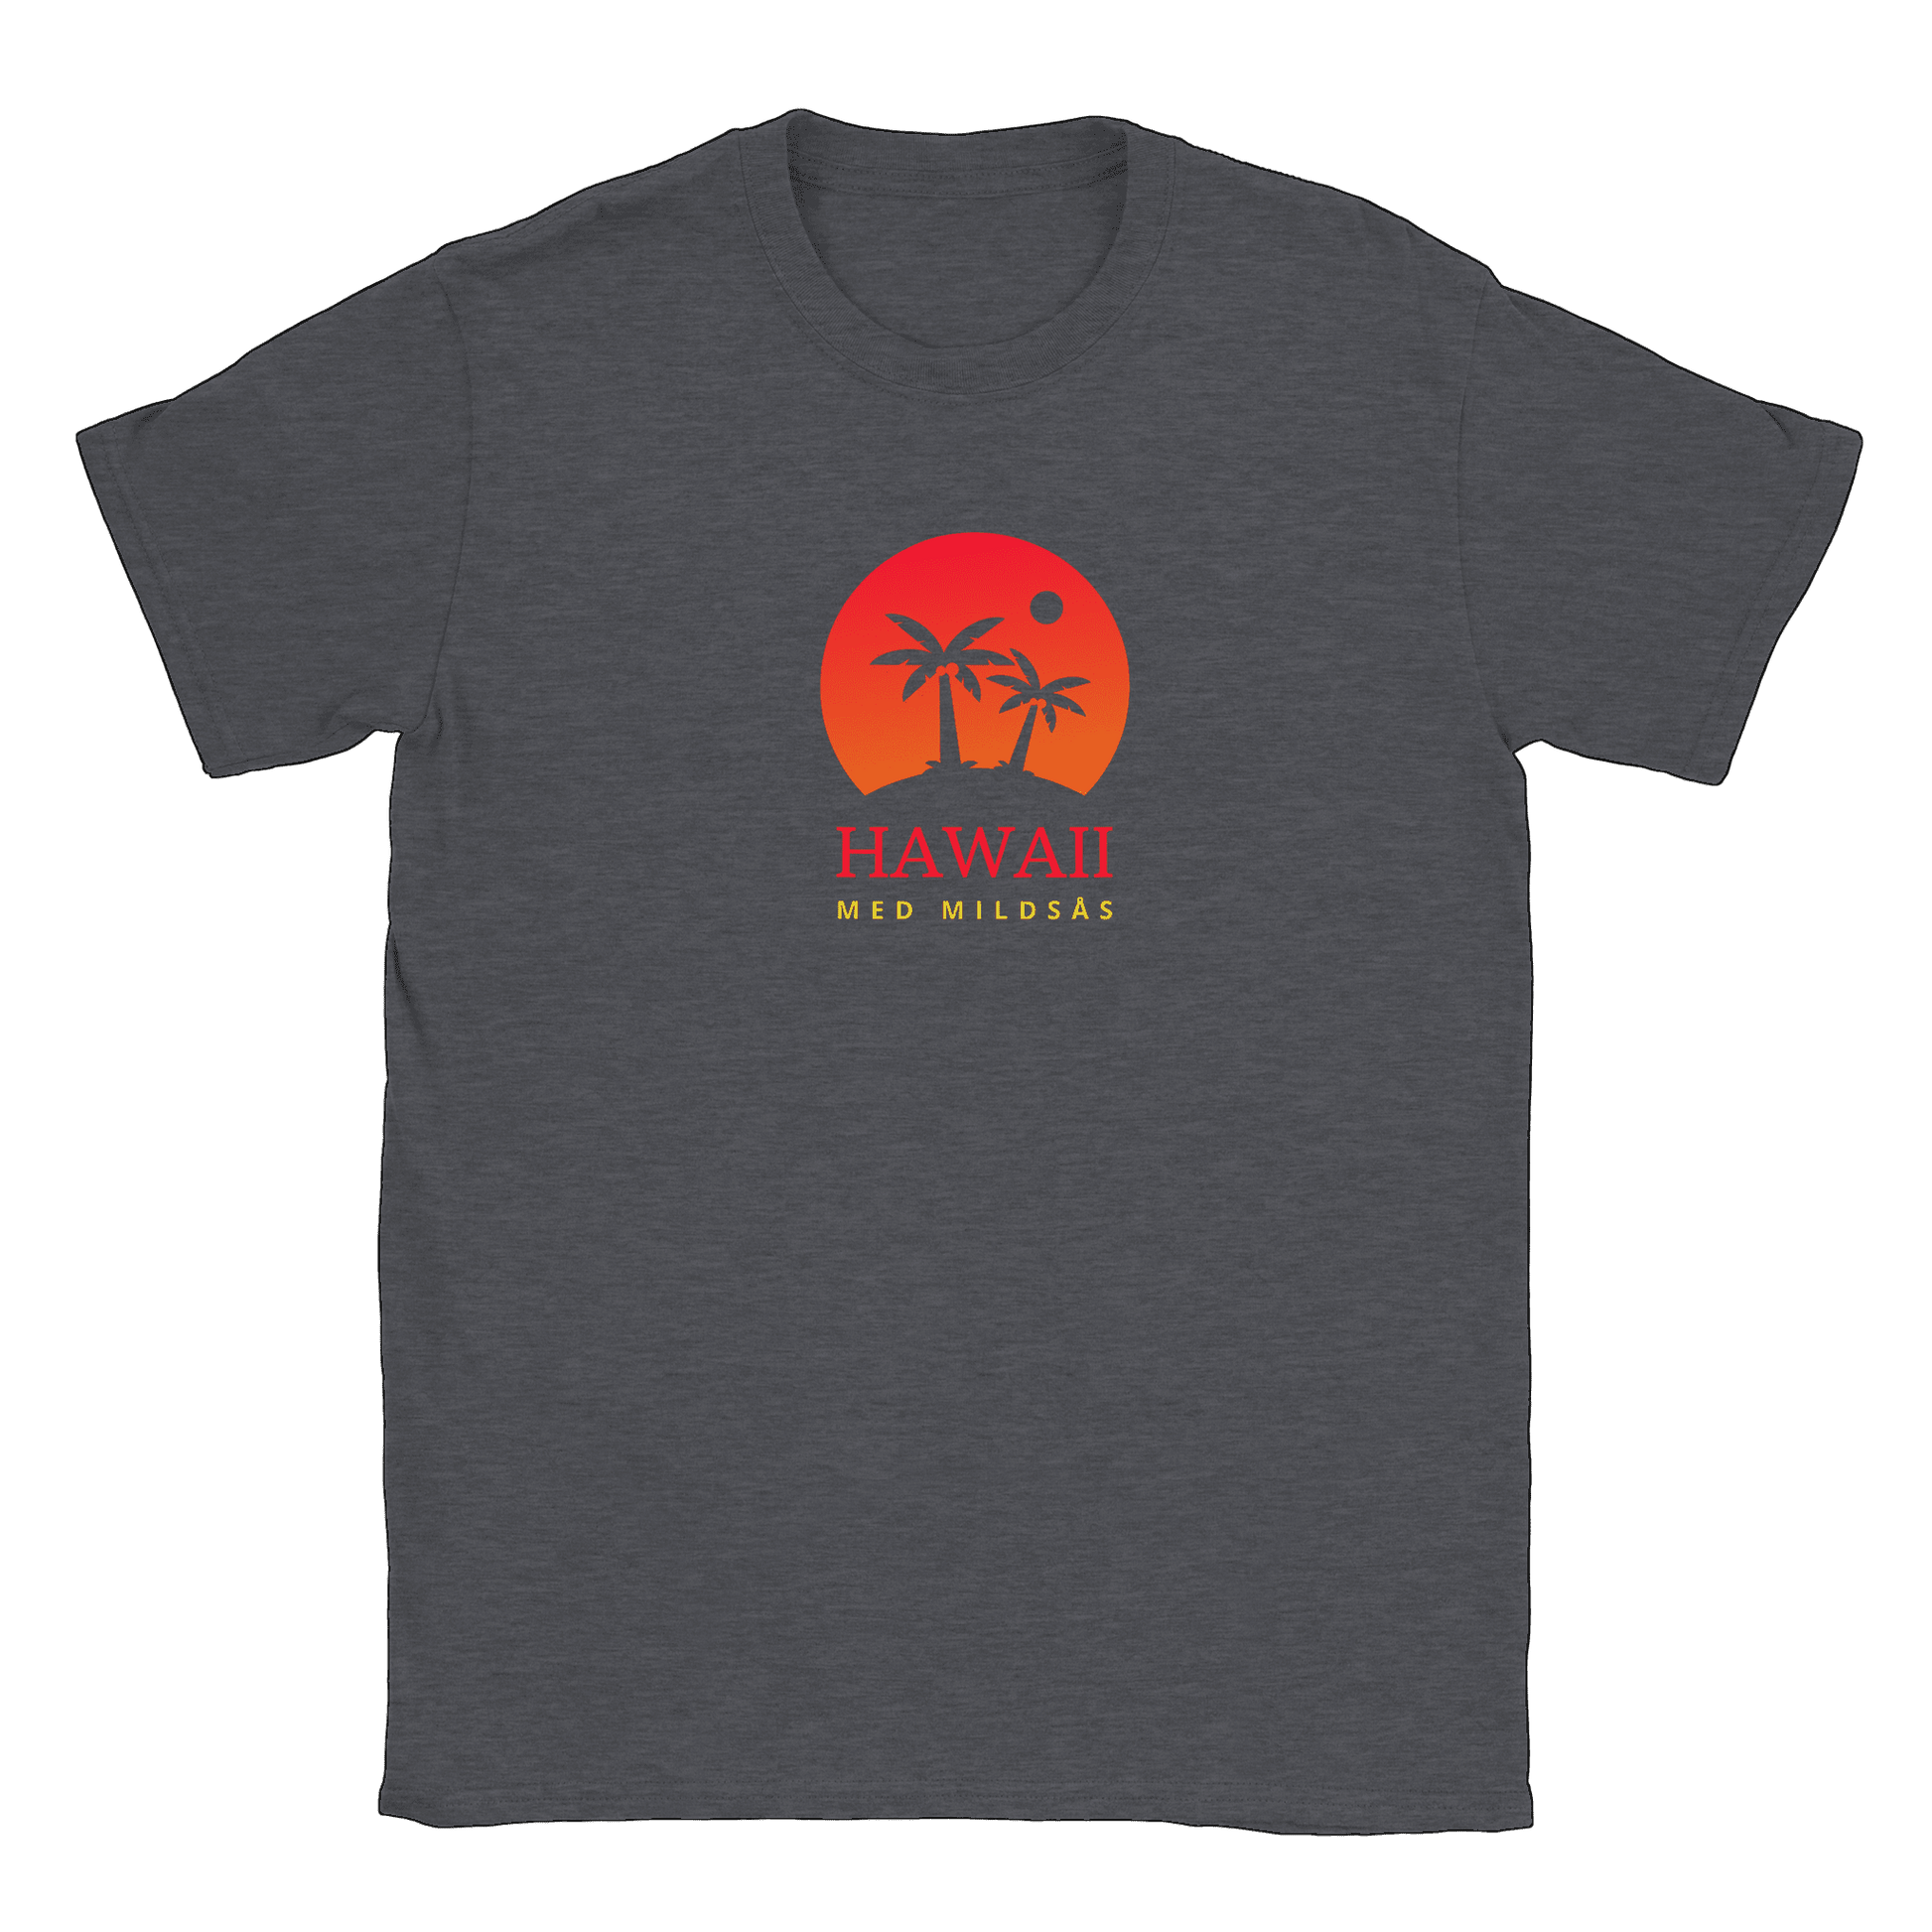 Hawaii med mildsås - T-shirt Mörk Ljung